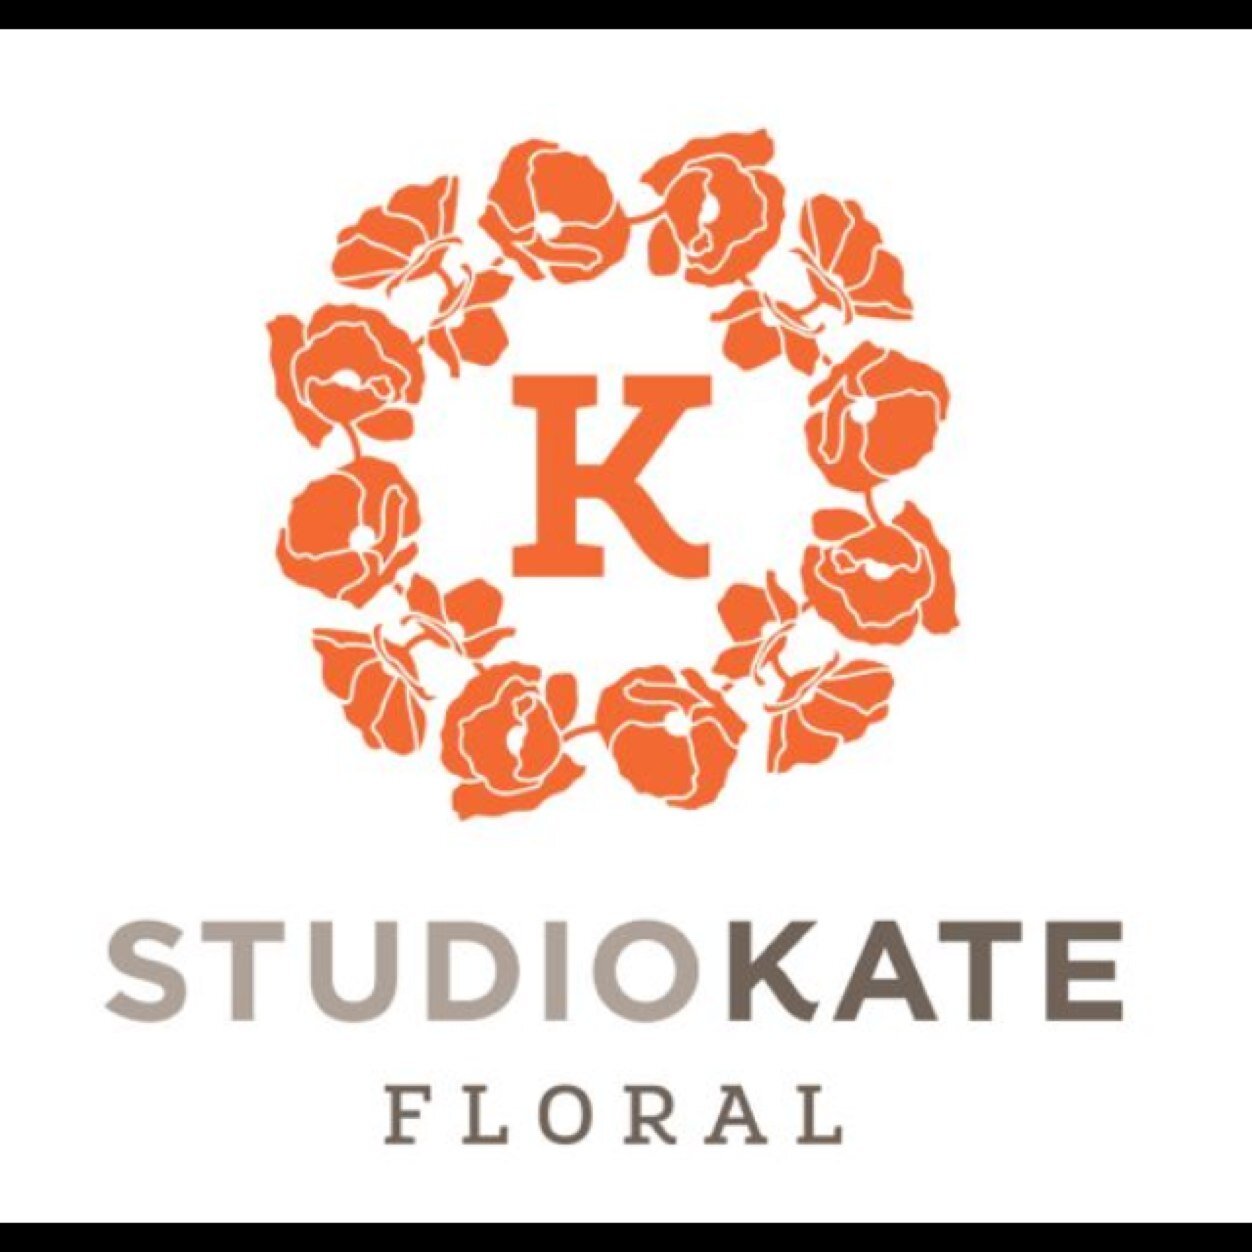 Custom studio floral design